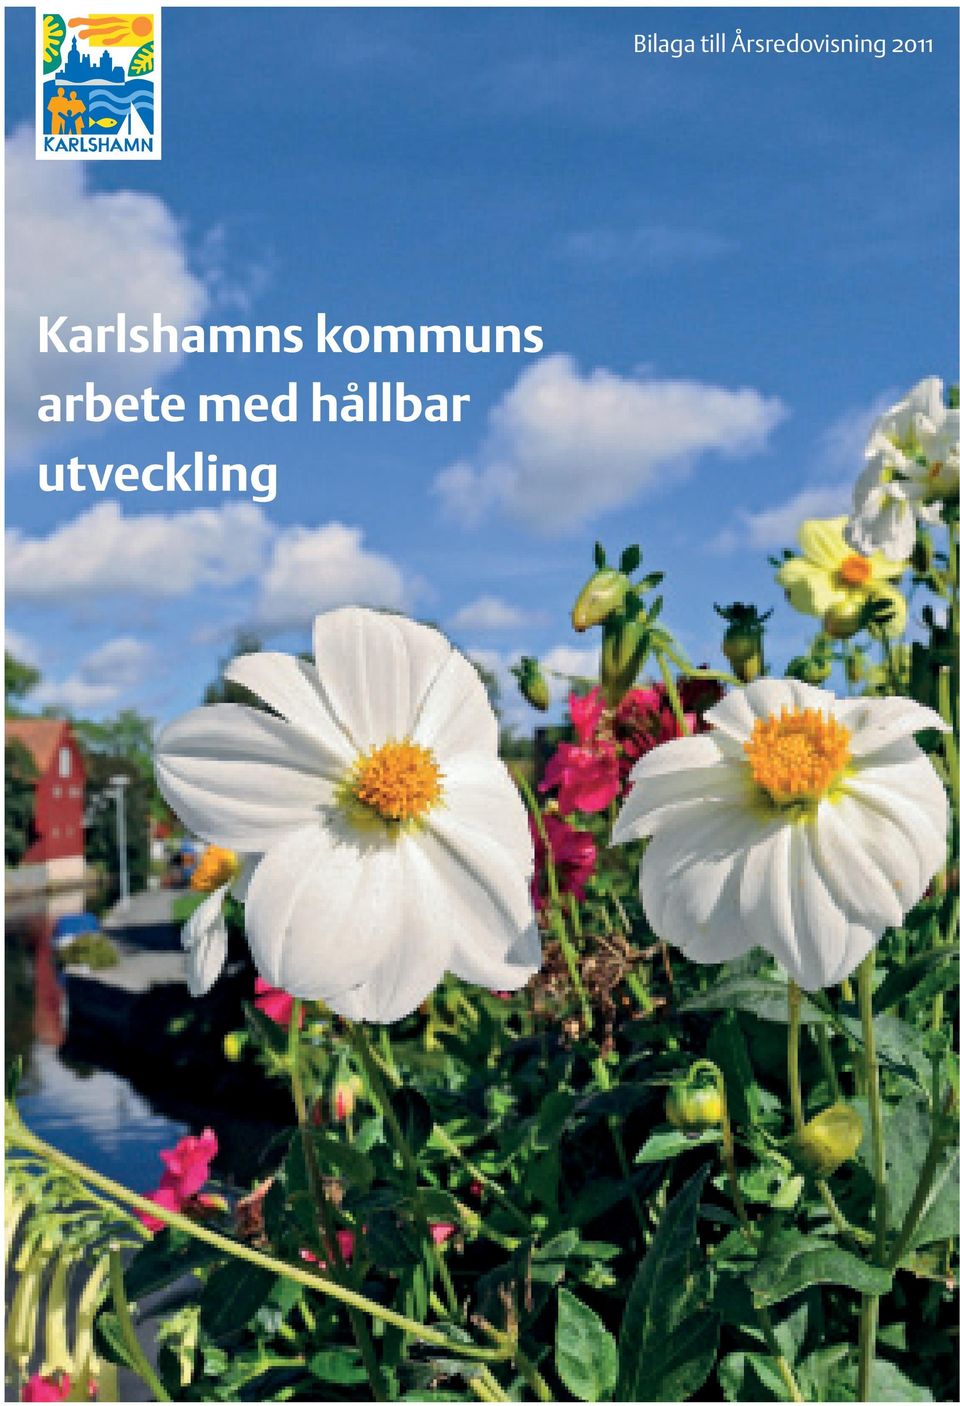 Karlshamns kommuns